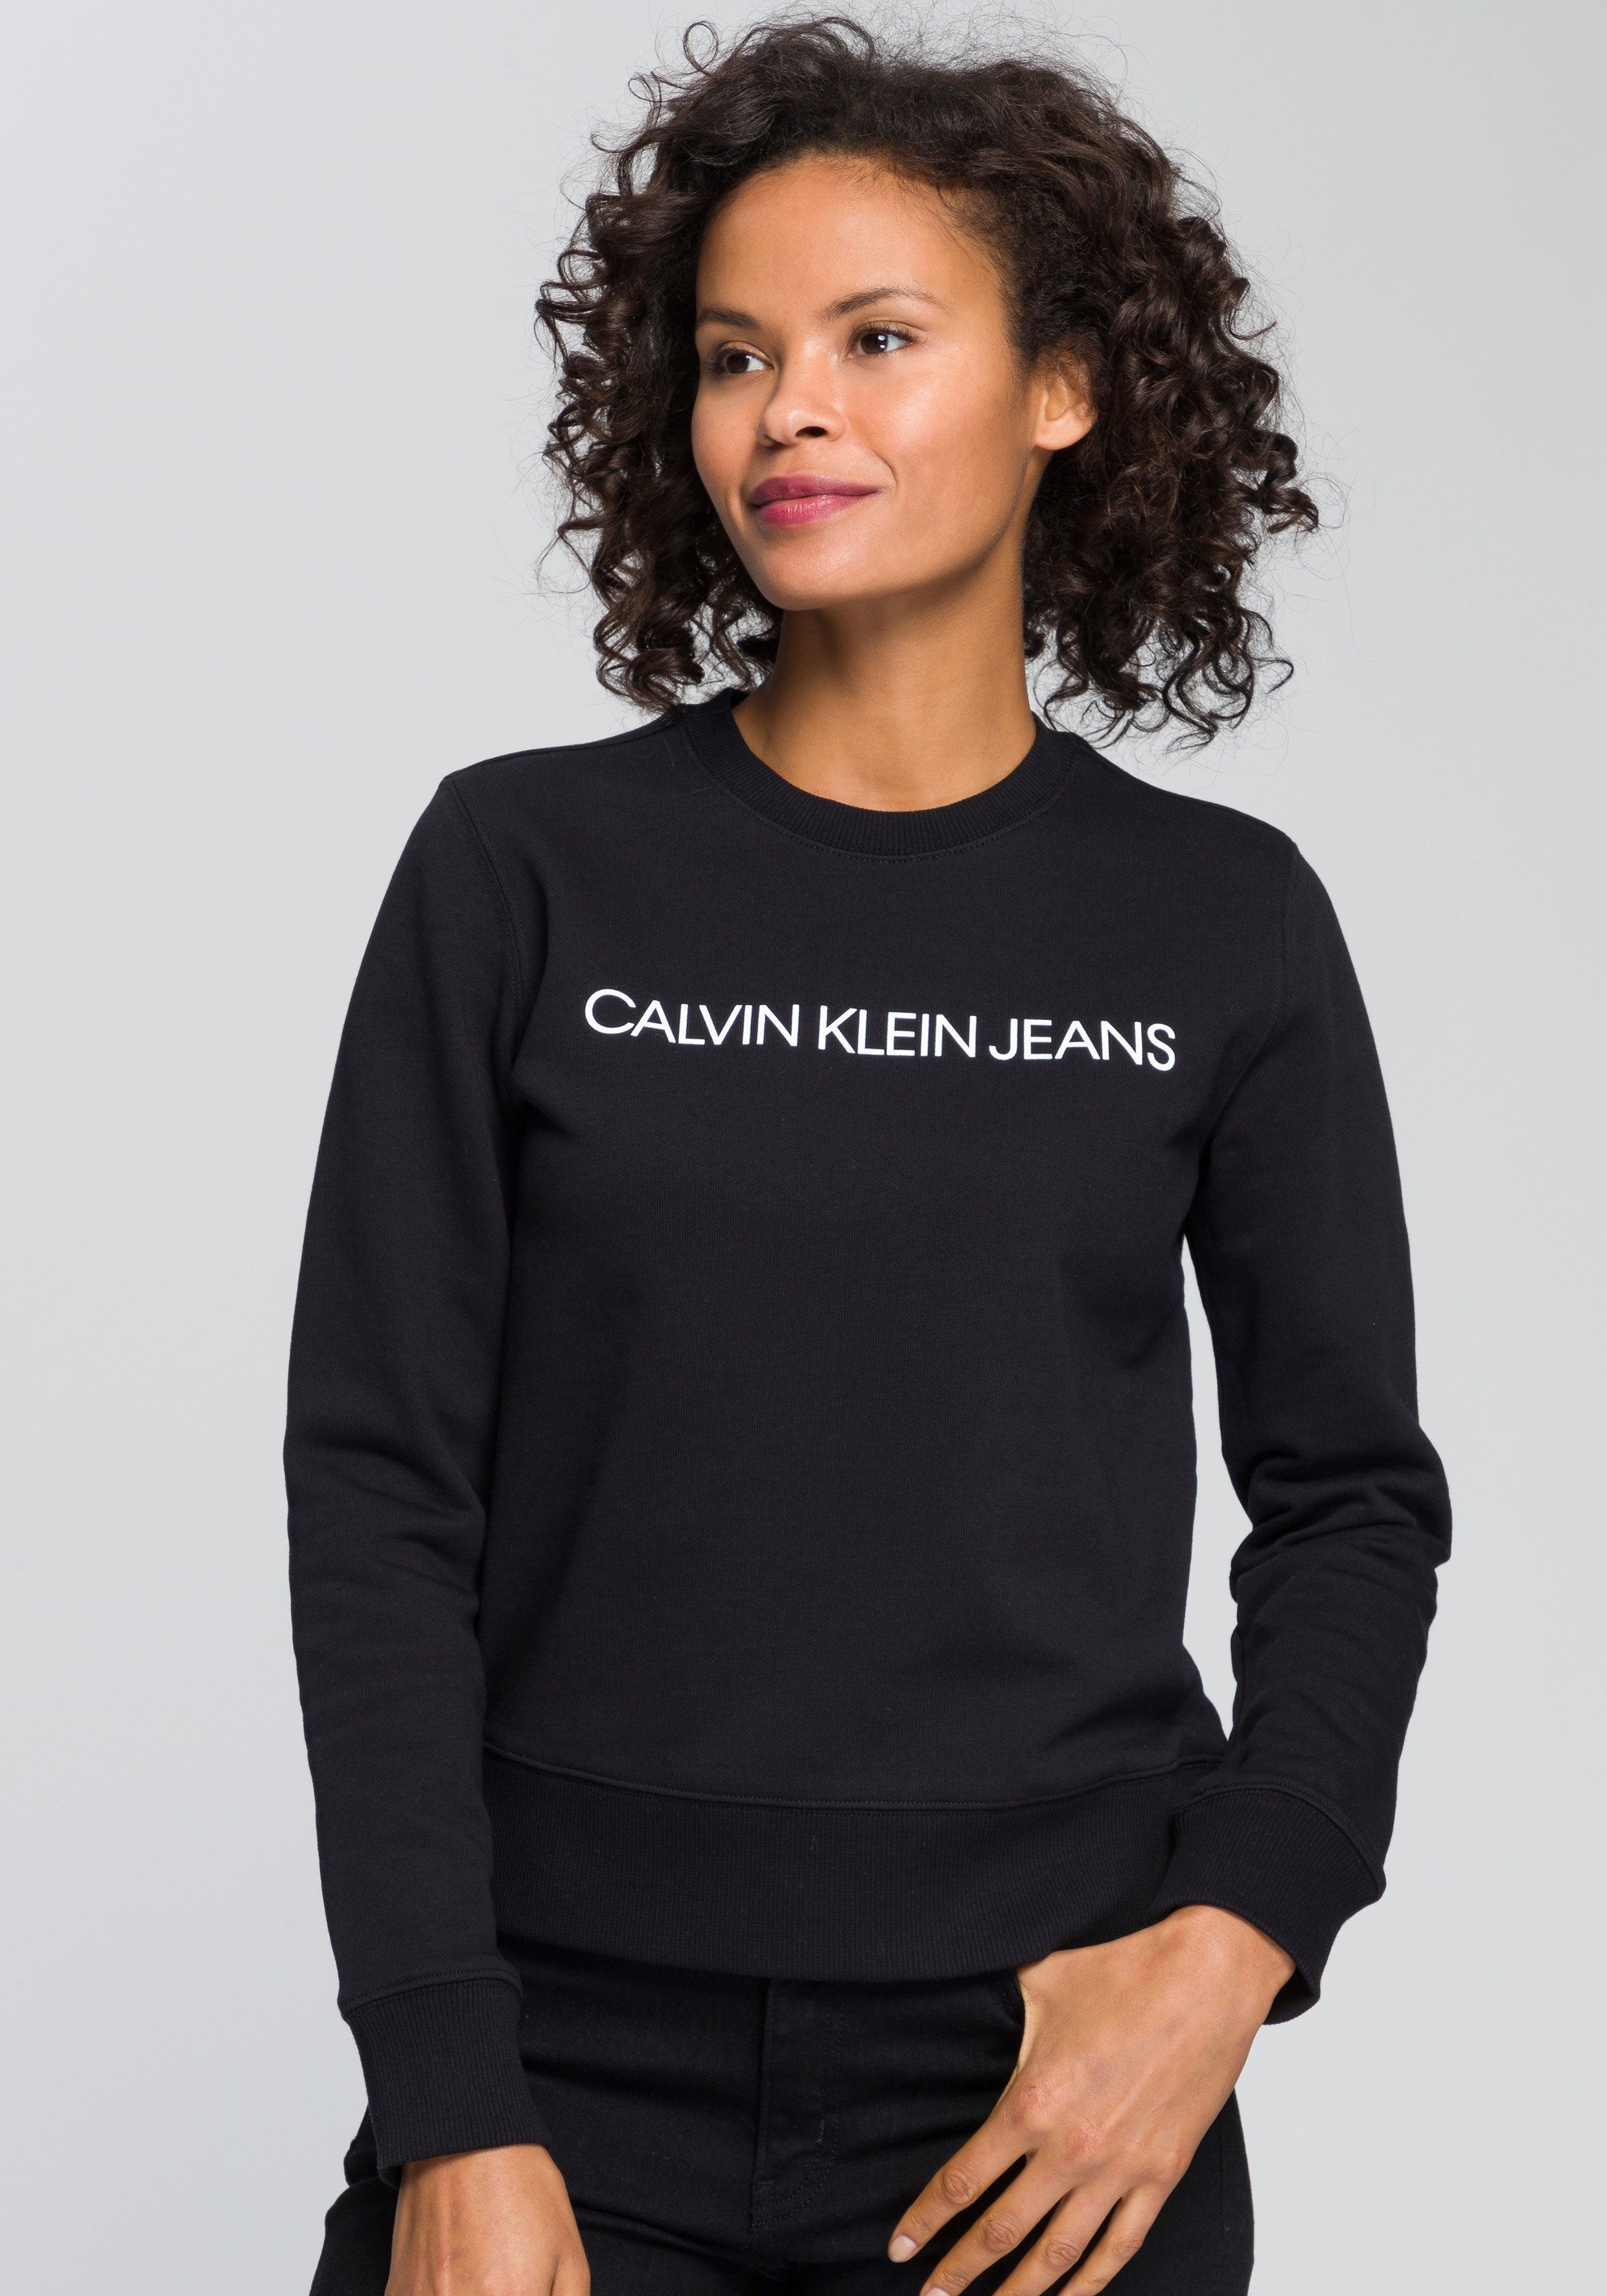 CALVIN KLEIN JEANS Damen Pullover online kaufen | OTTO